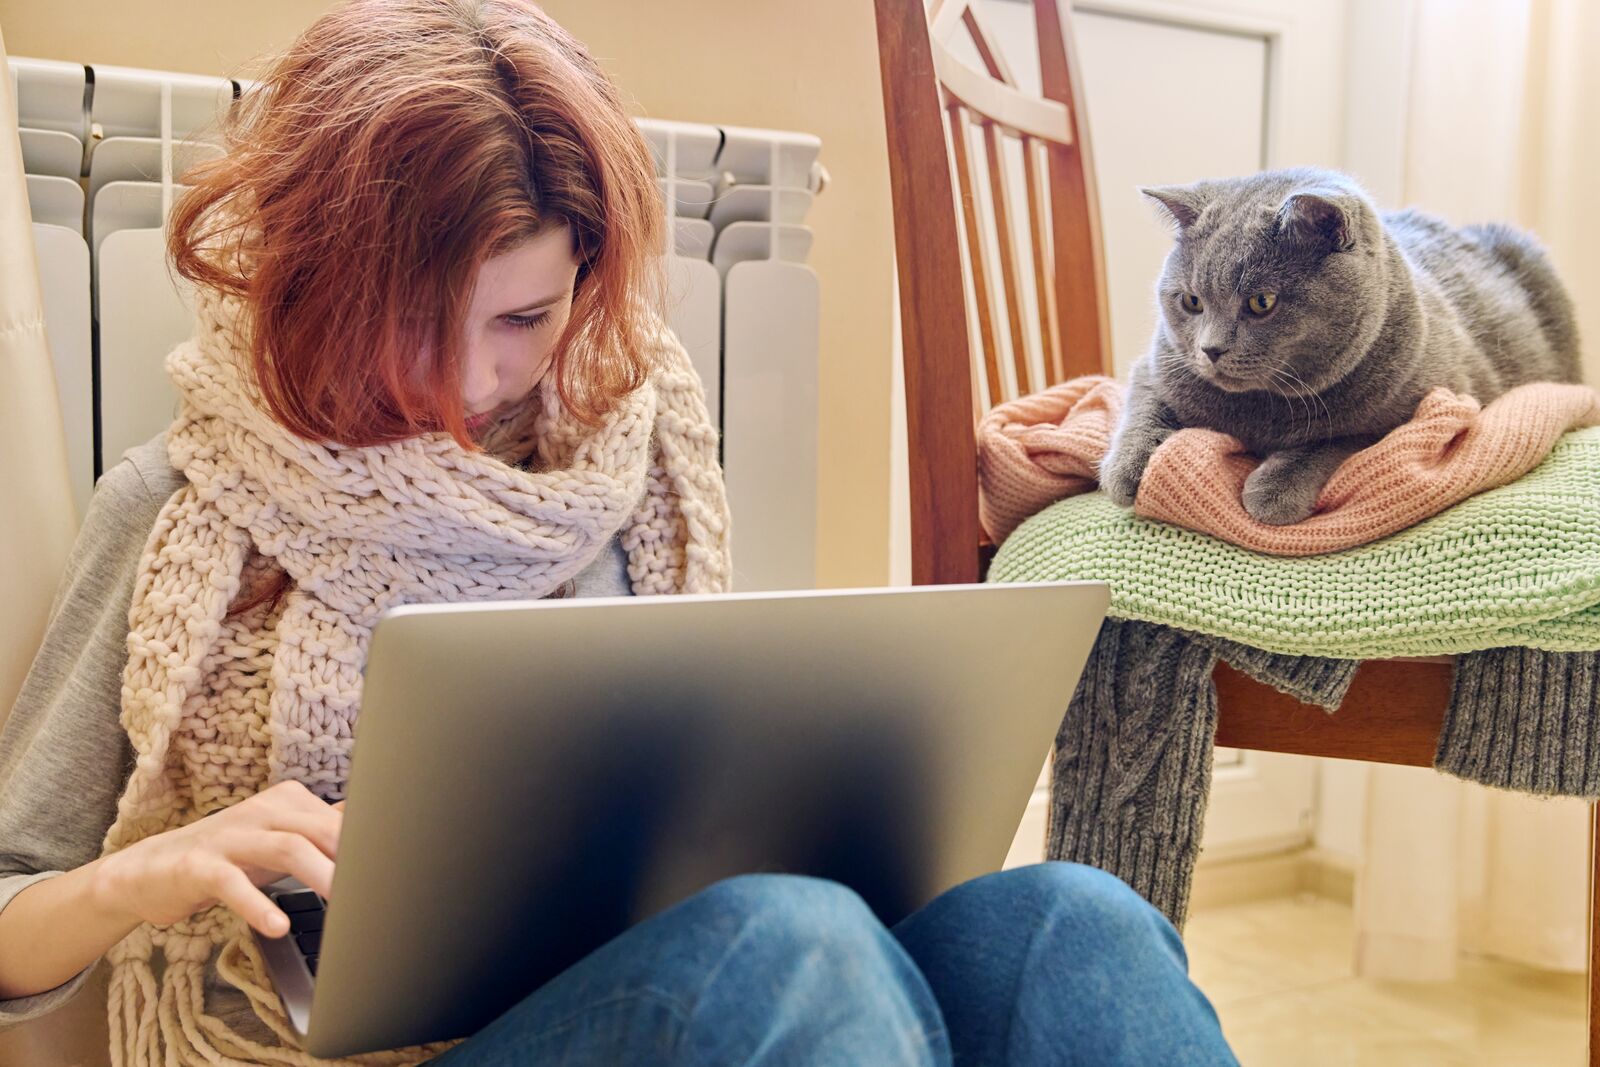 Eine Frau mit einem dicken Schal und einem Rechner auf den Knien. Eine Katze schaut ihr zu.